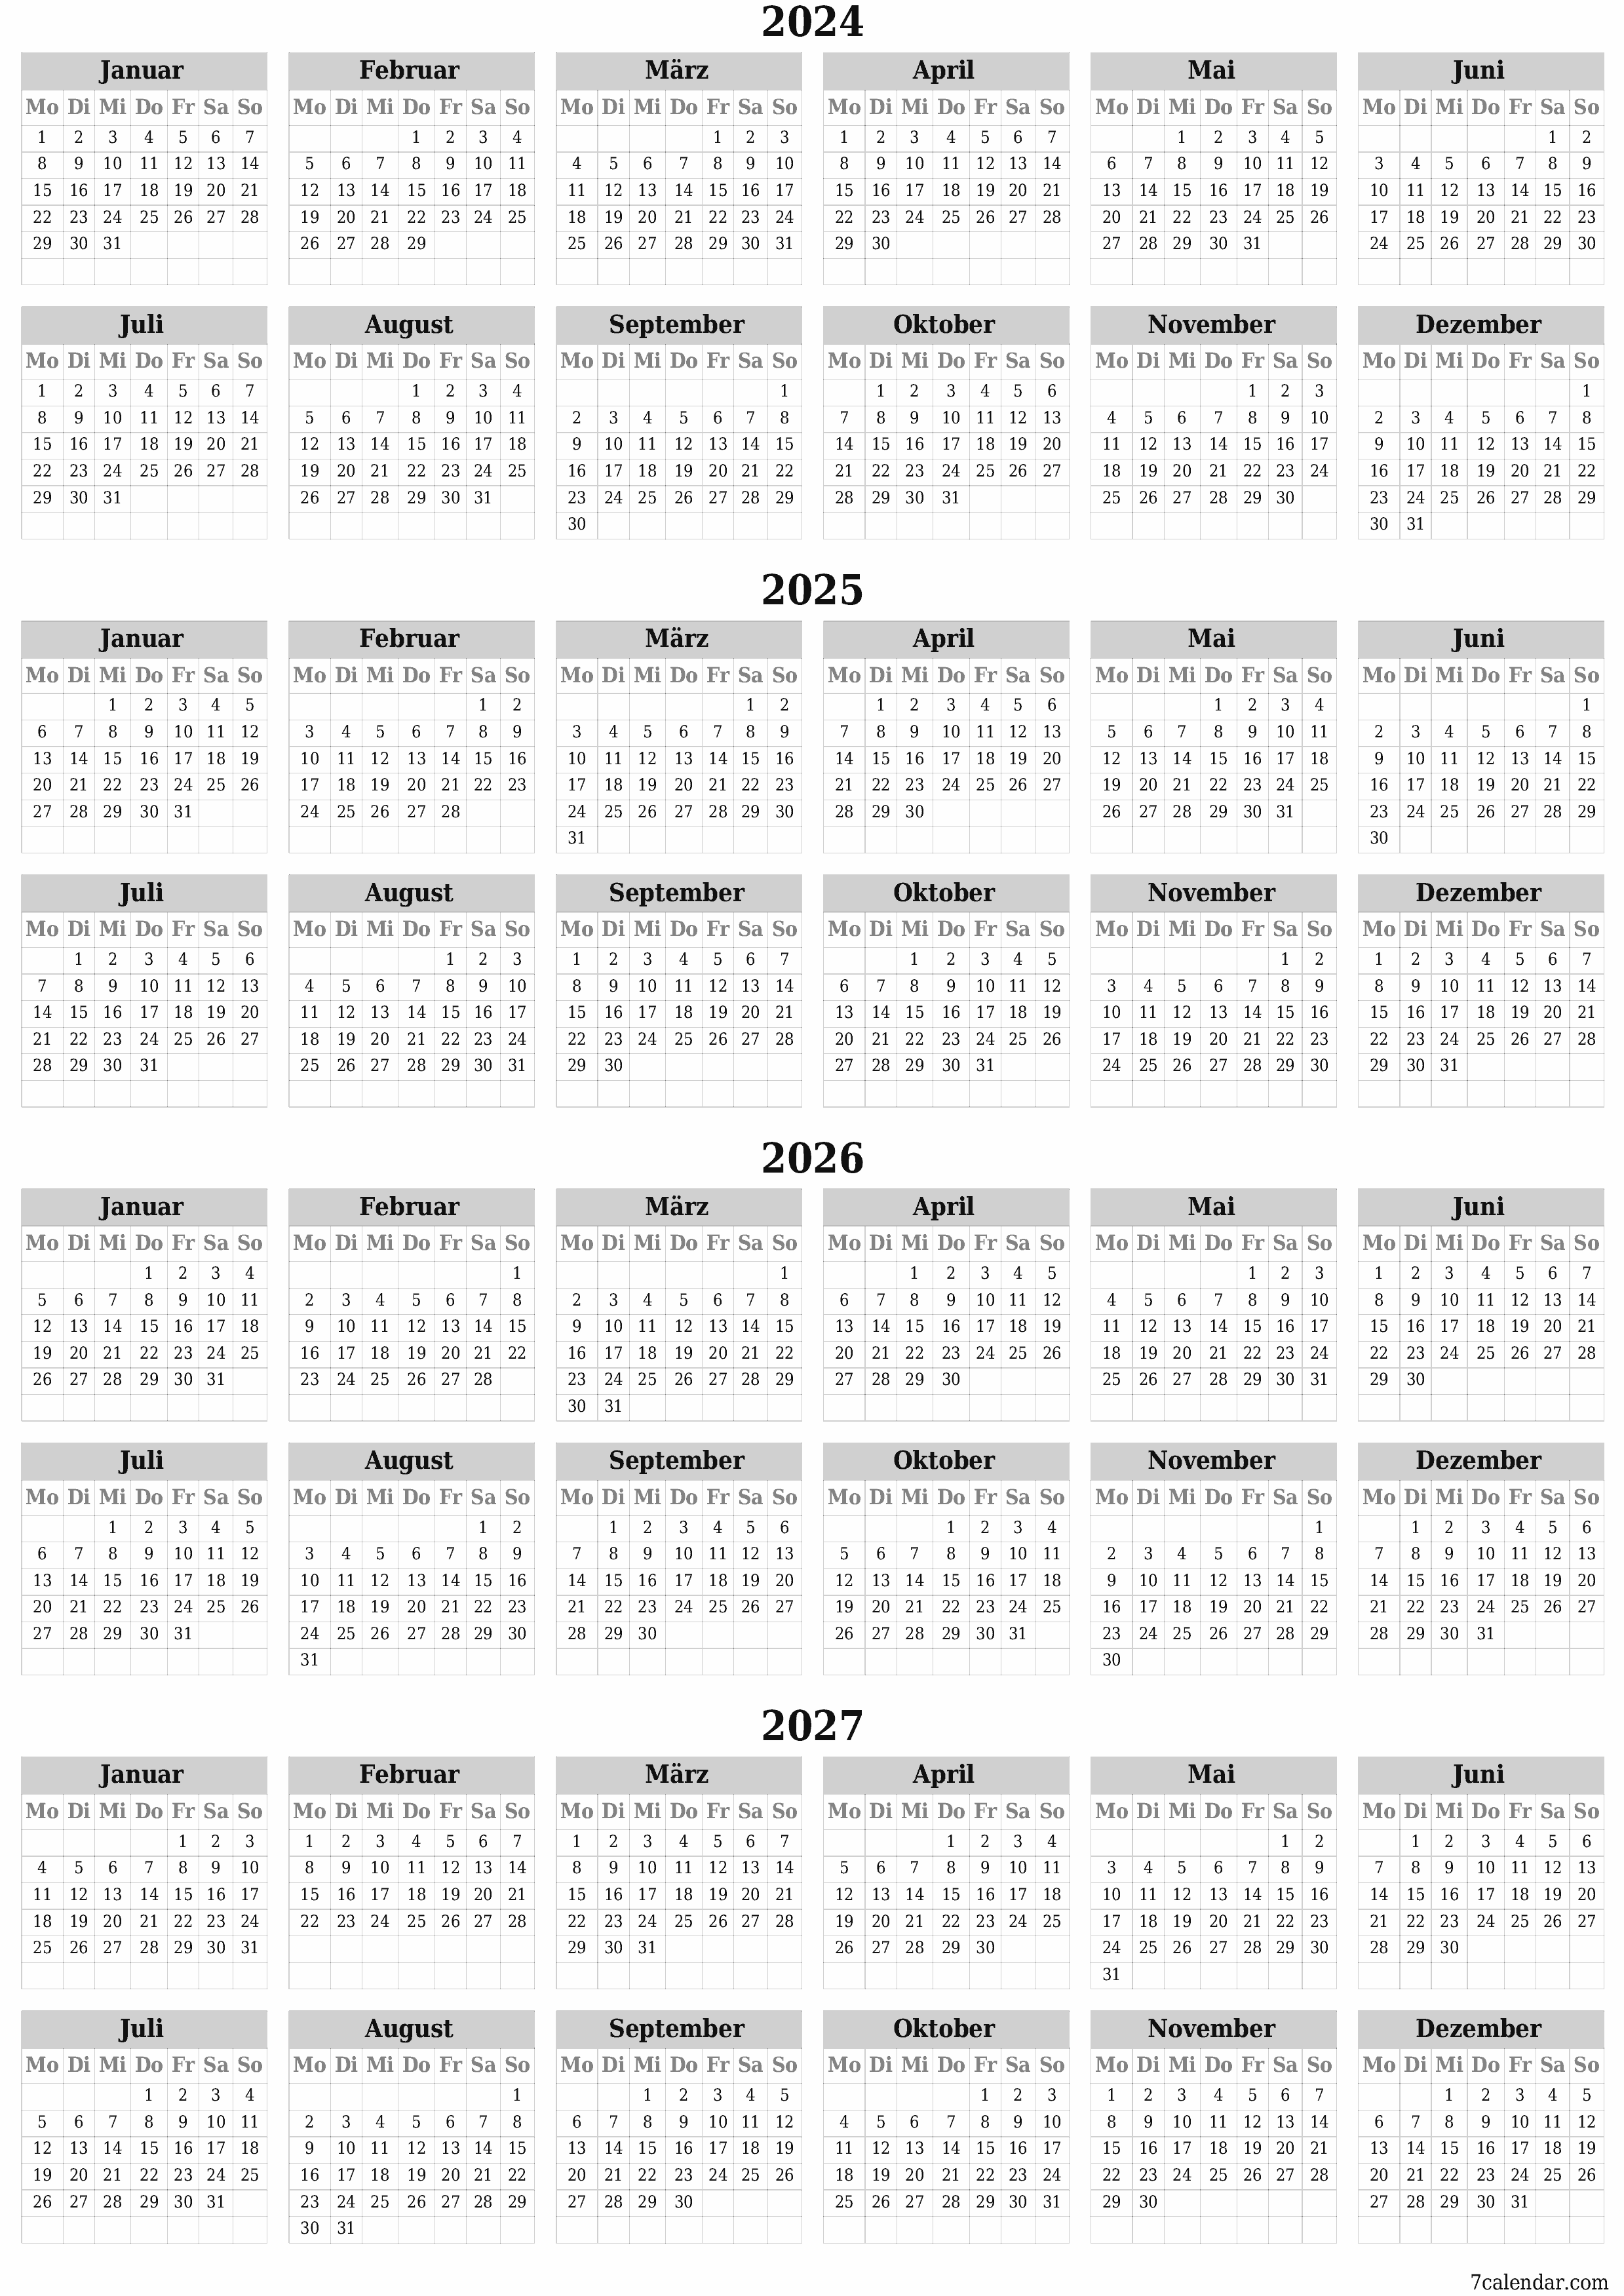  zum Ausdrucken Wandkalender vorlage kostenloser vertikal Jahreskalender Kalender März (Mär) 2024